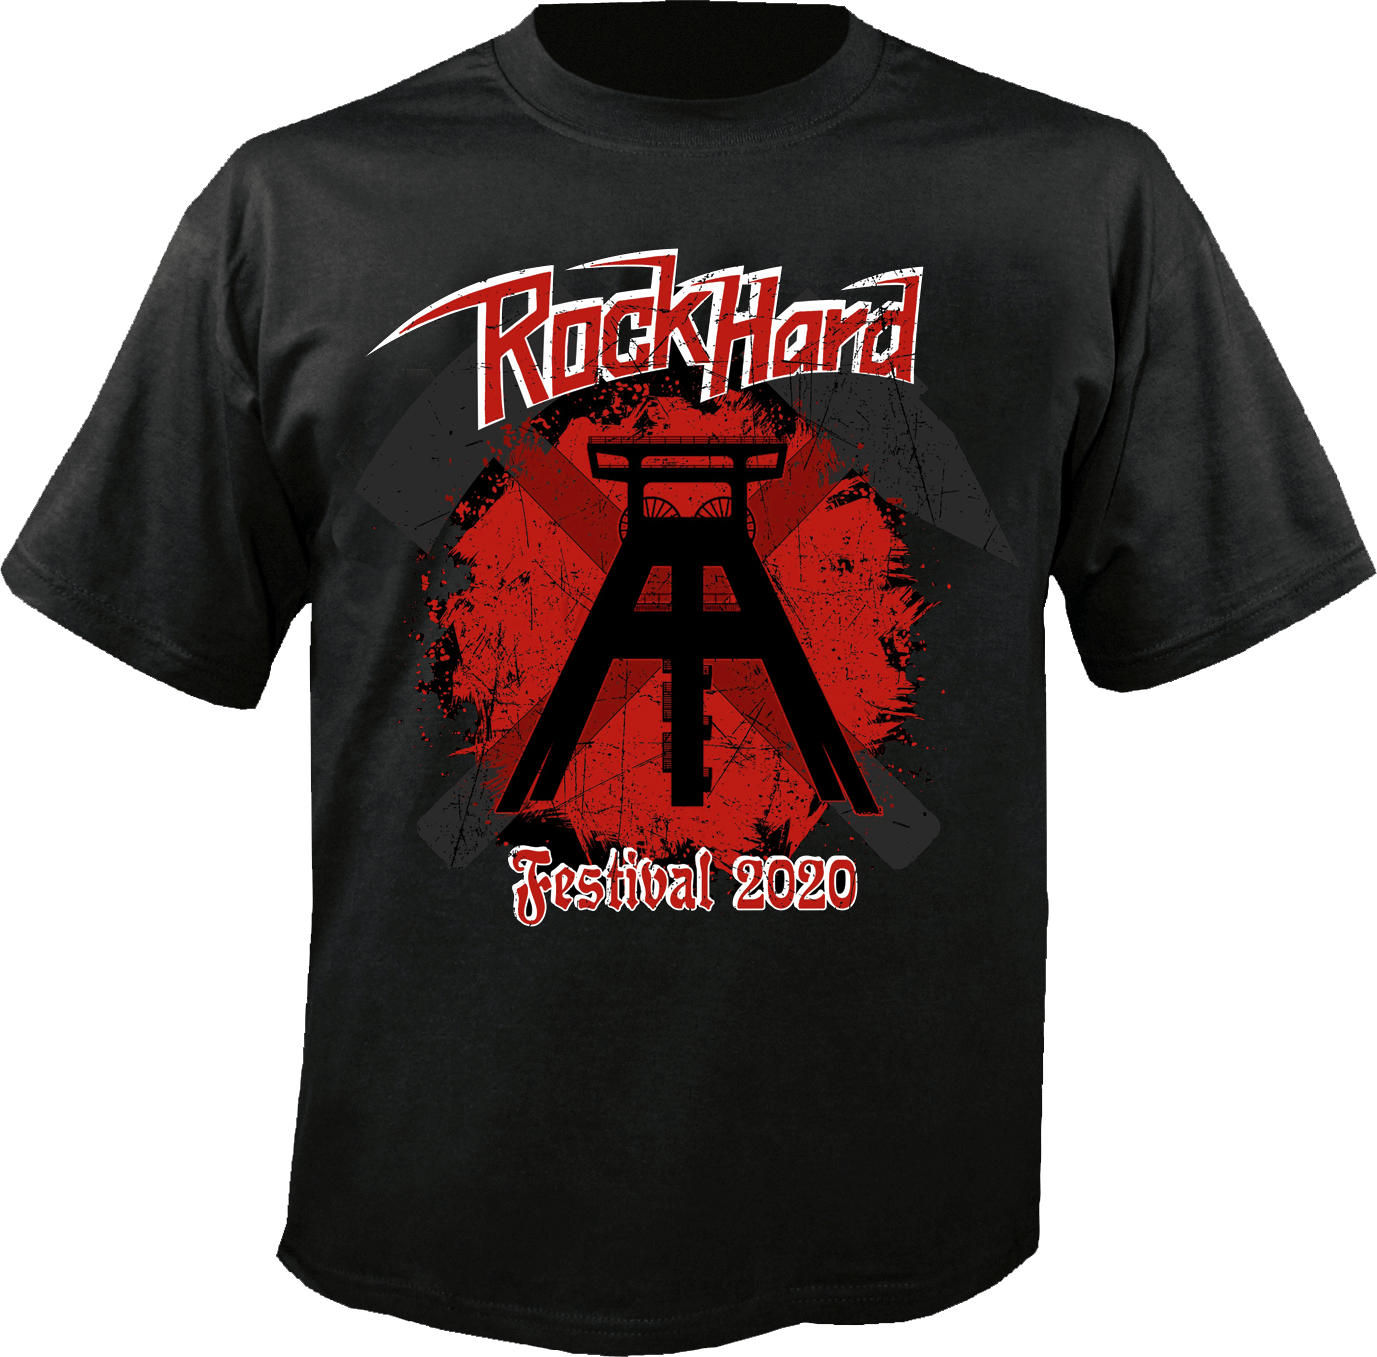 Rock Hard Festival 2020: Frühbuchershirt für Ticketbestellungen bis Ende Oktober